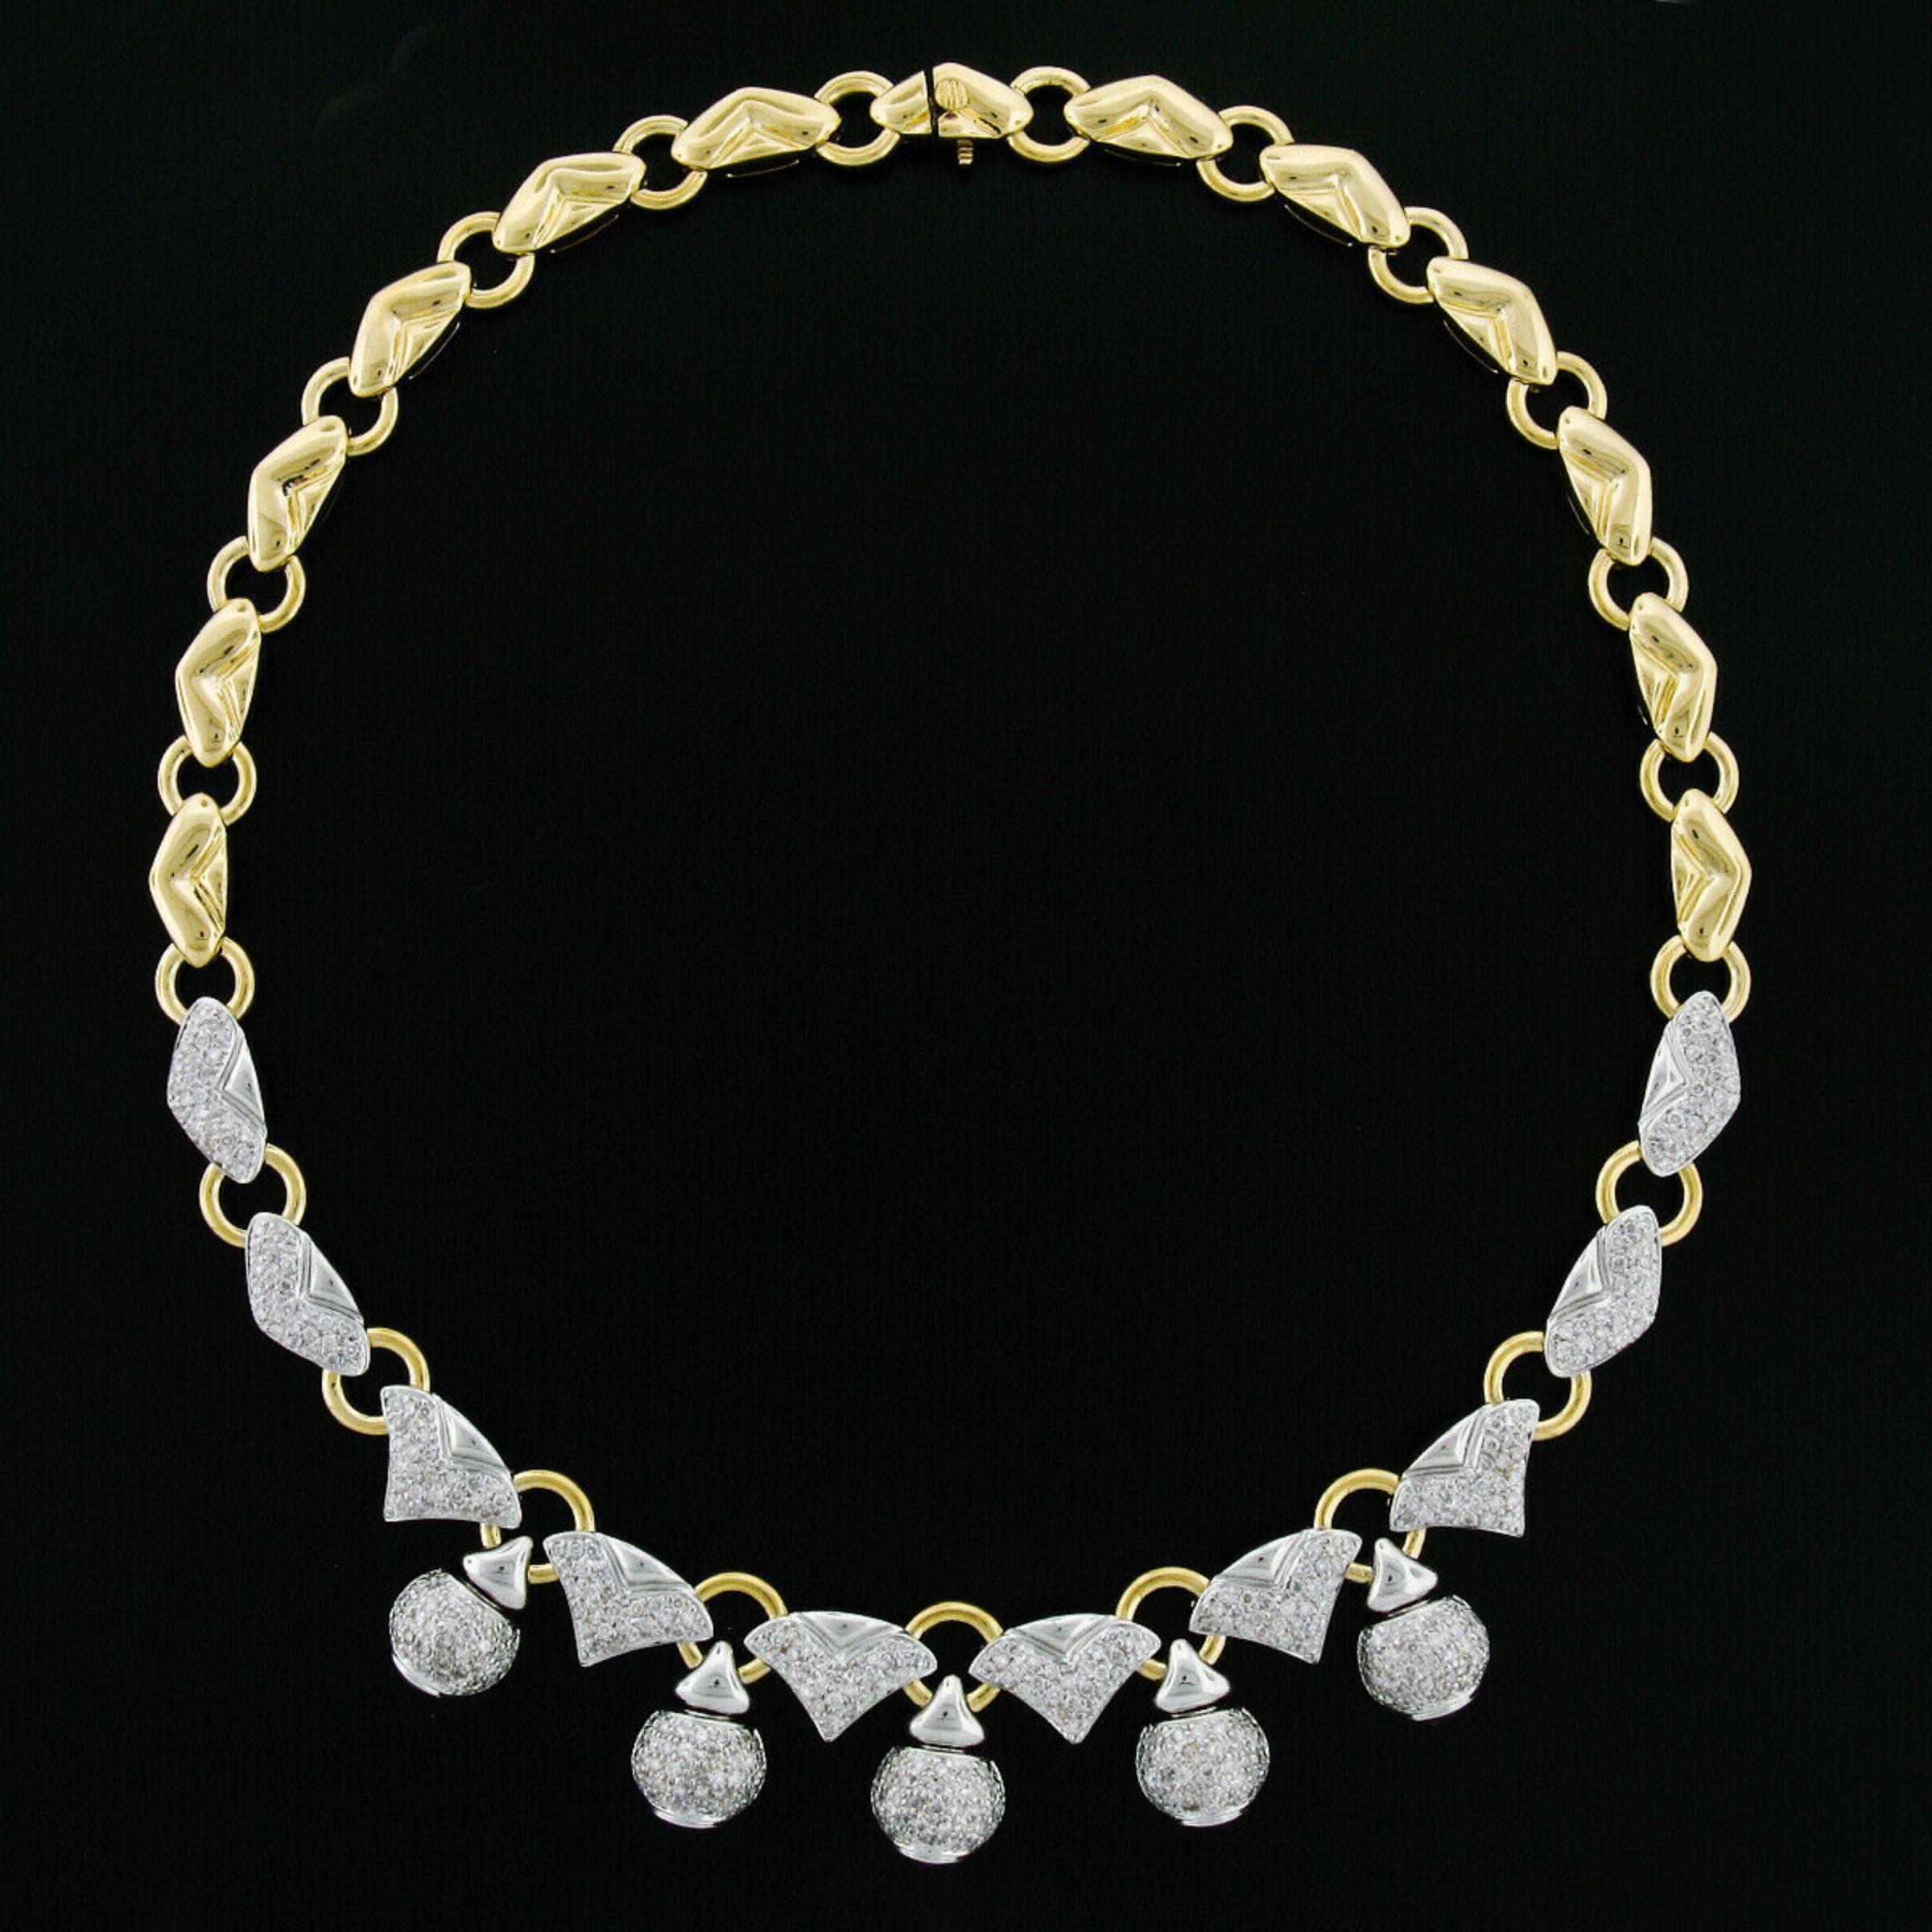 Voici un collier en or jaune 18 carats très bien fait et solidement réalisé, avec une frange vraiment importante, ornée de 4,70 carats de diamants de qualité. Les diamants sont soigneusement sertis dans la partie inférieure du collier, avec 5 boules